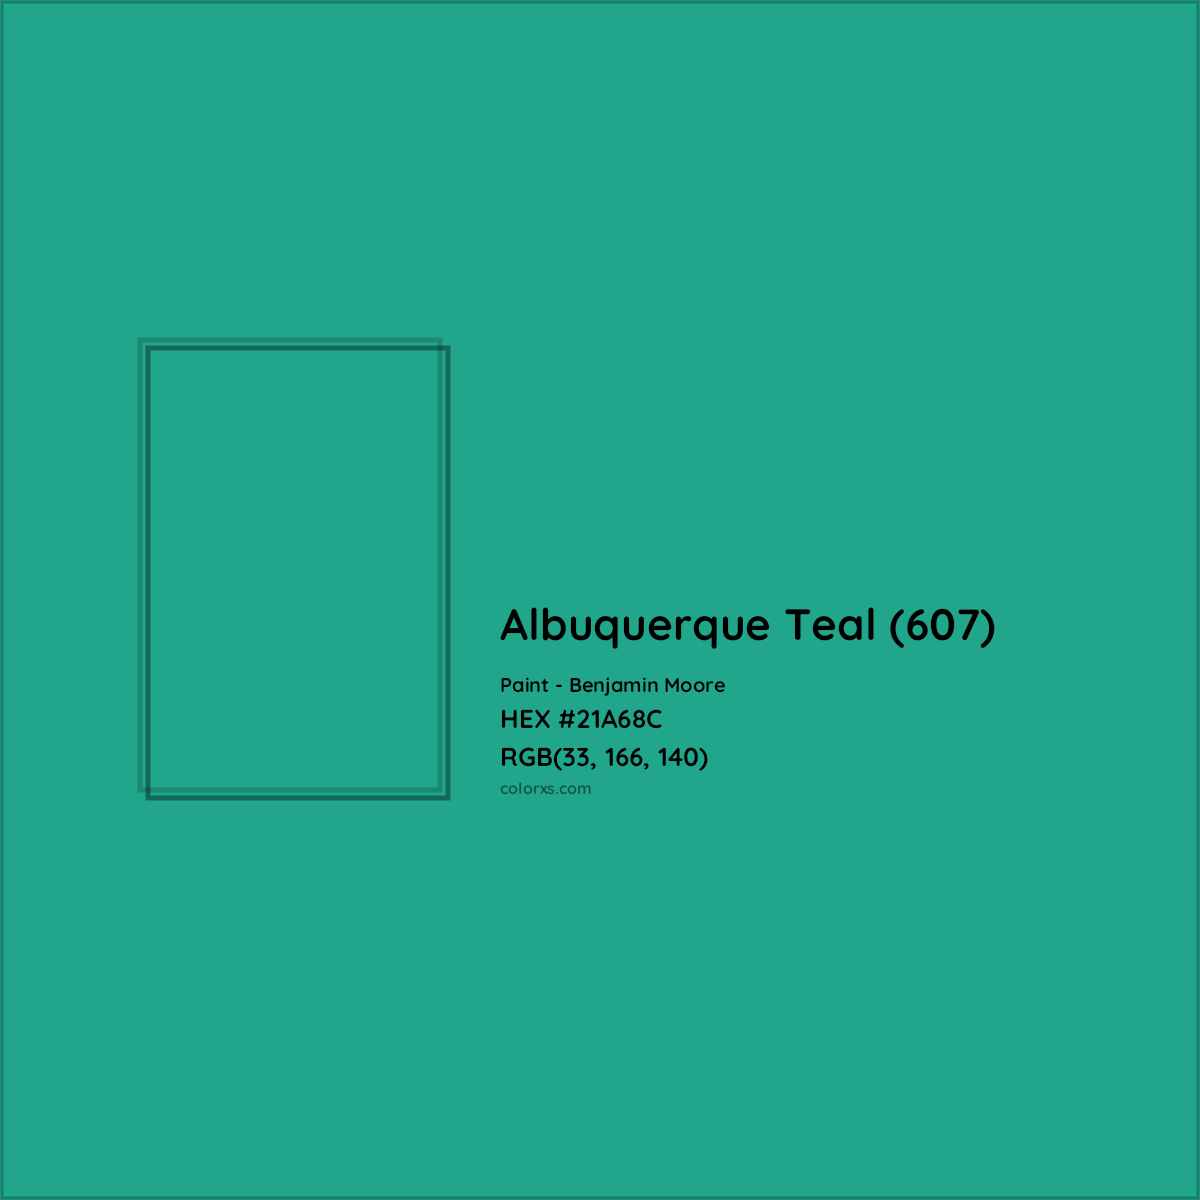 HEX #21A68C Albuquerque Teal (607) Paint Benjamin Moore - Color Code